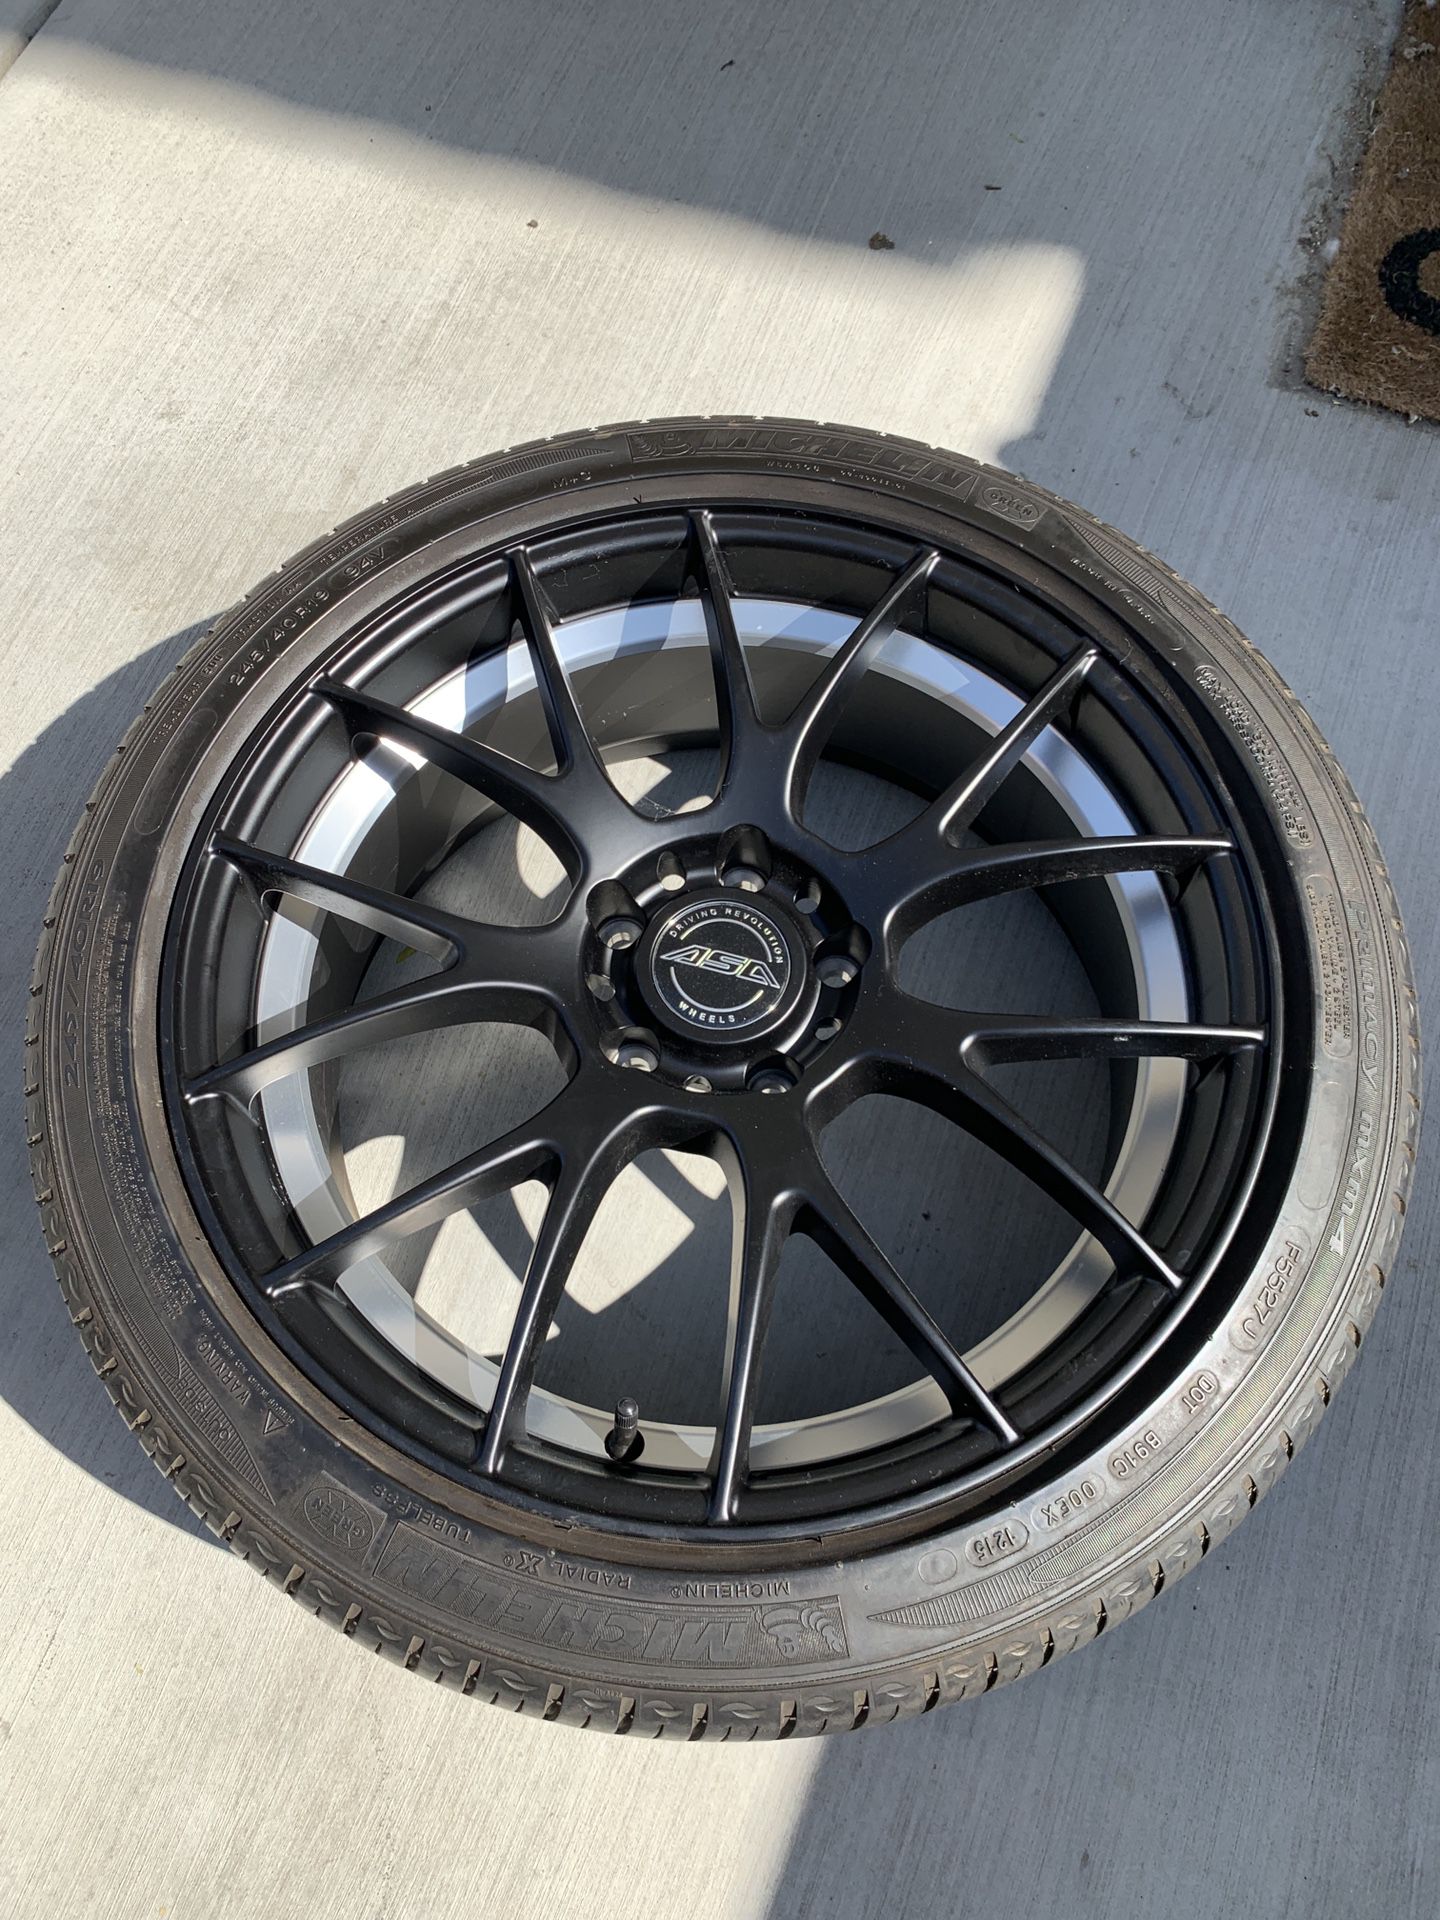 19 inch rim with Michelin tire